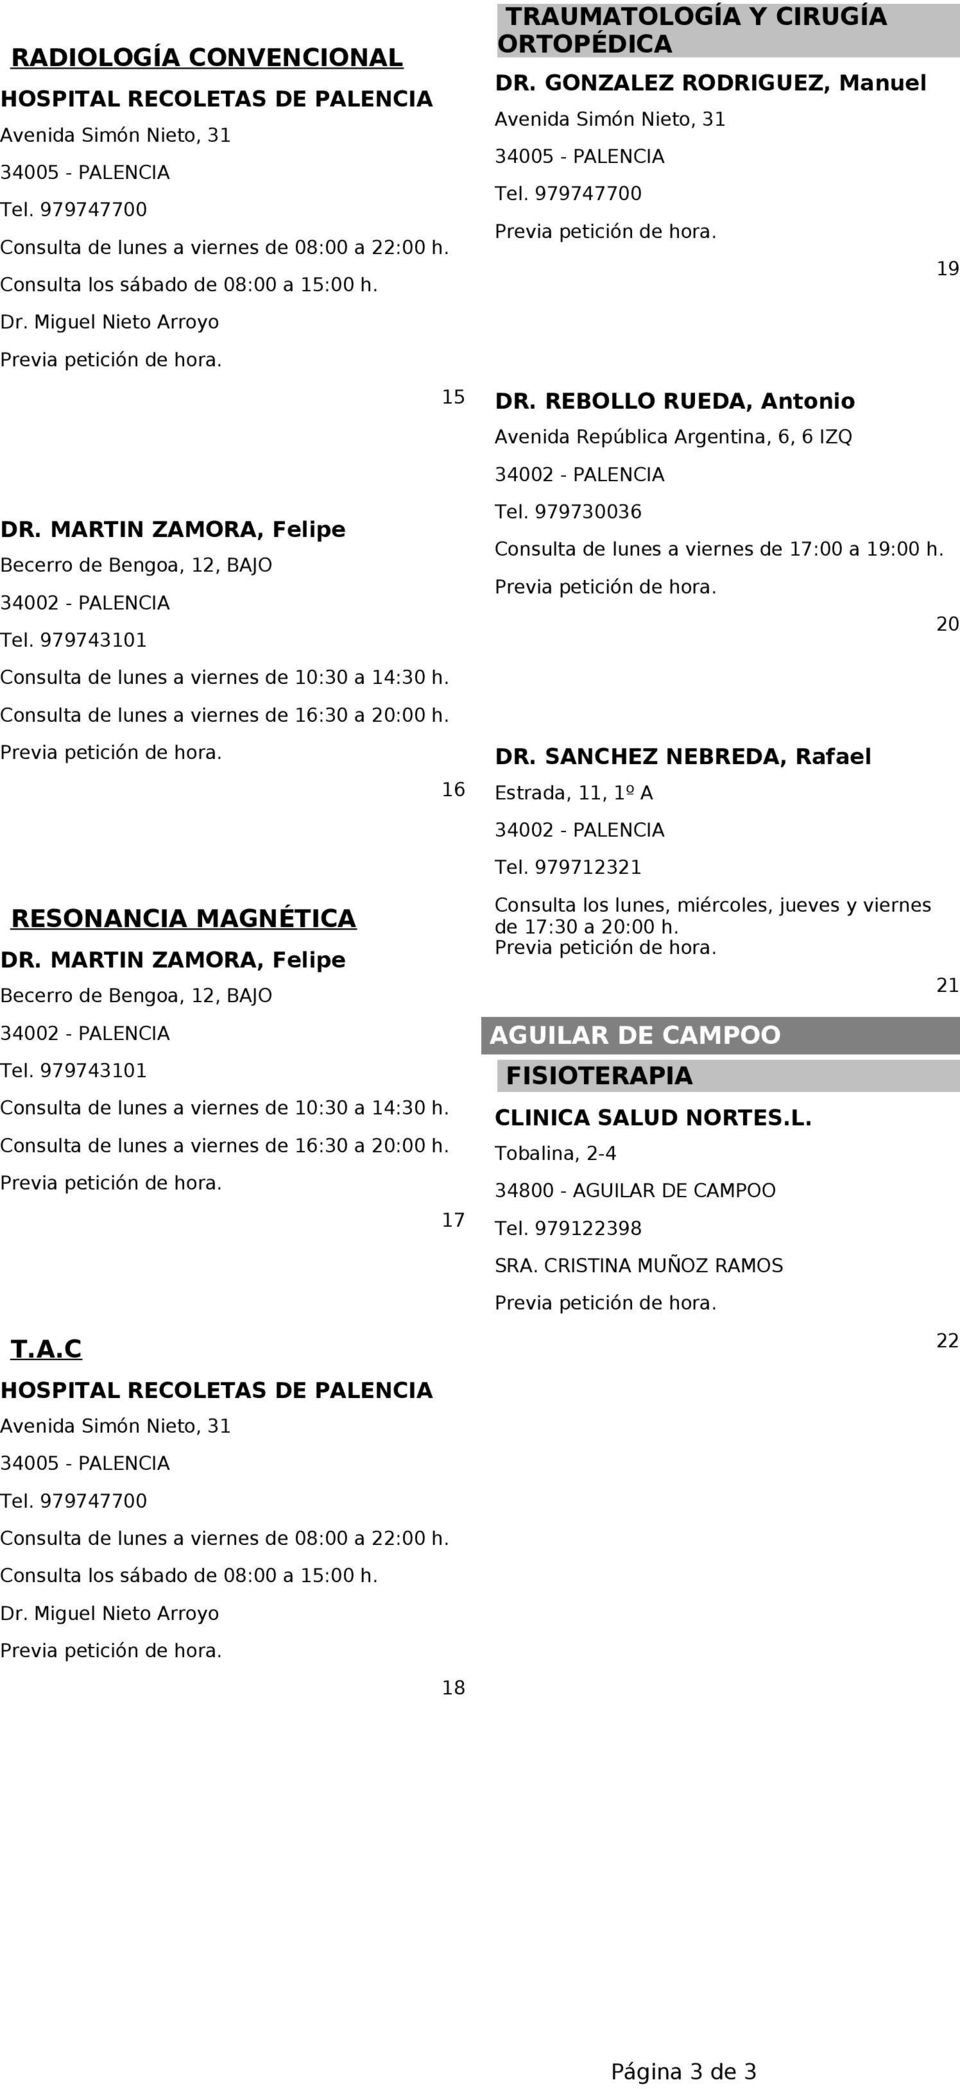 6 RESONANCIA MAGNÉTICA DR. MARTIN ZAMORA, Felipe Becerro de Bengoa,, BAJO 400 - PALENCIA Tel. 979740 Consulta de lunes a viernes de 0:0 a 4:0 h. Consulta de lunes a viernes de 6:0 a 0:00 h. 7 T.A.C HOSPITAL RECOLETAS DE PALENCIA Avenida Simón Nieto, 4005 - PALENCIA Consulta de lunes a viernes de 08:00 a :00 h.